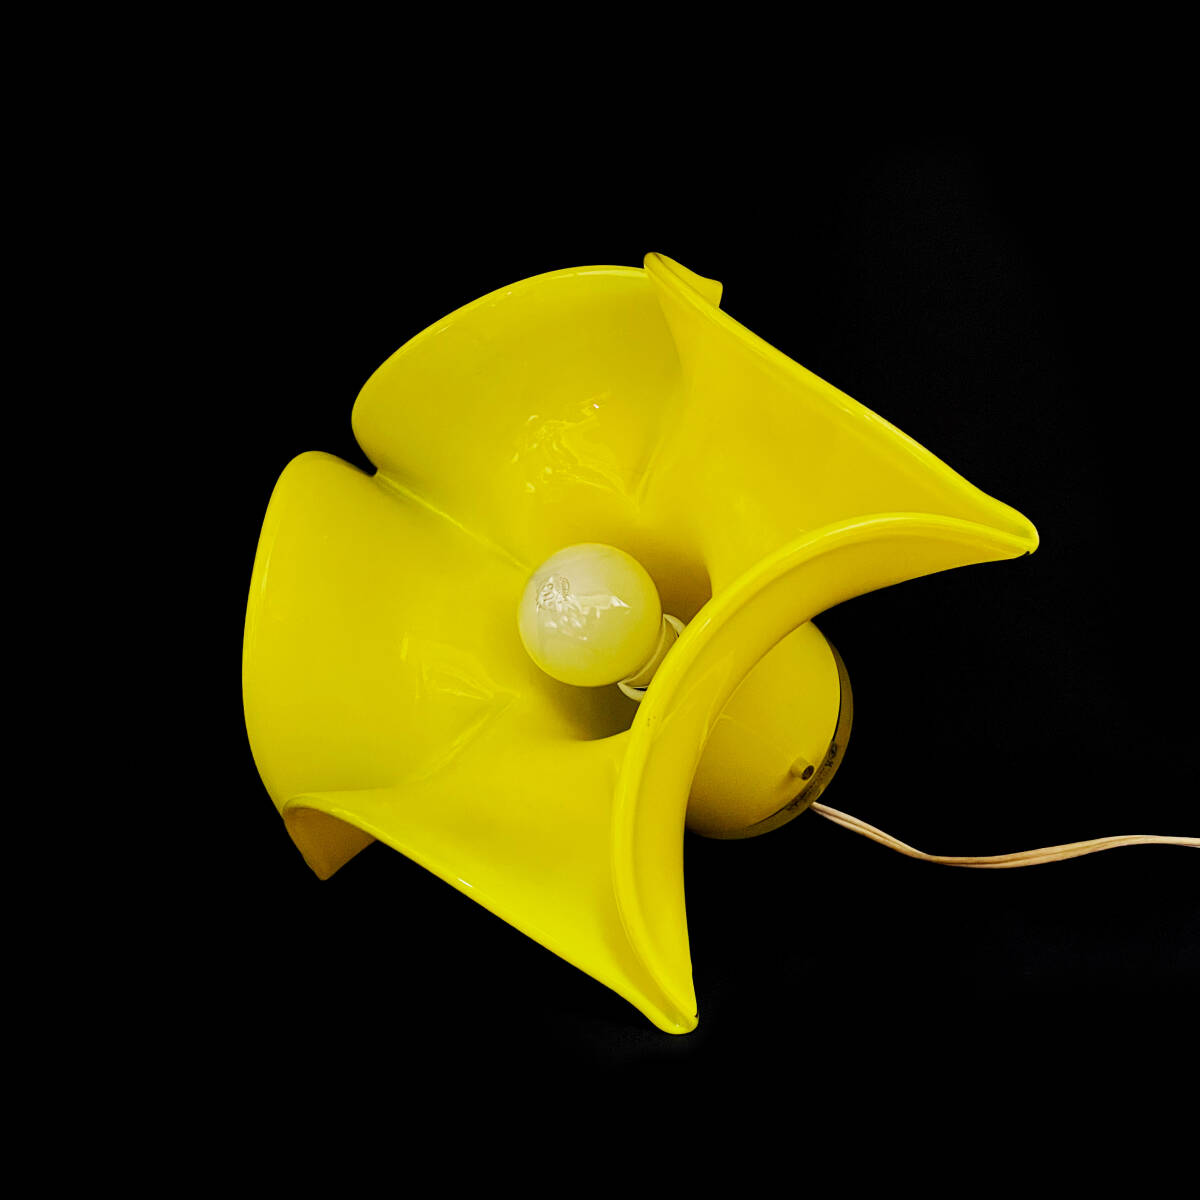  электризация OK! Iwata художественное стекло цветок type лампа / желтый / желтый цвет / retro / античный / Iwata стекло / цветок / непрямое освещение / интерьер / украшение 